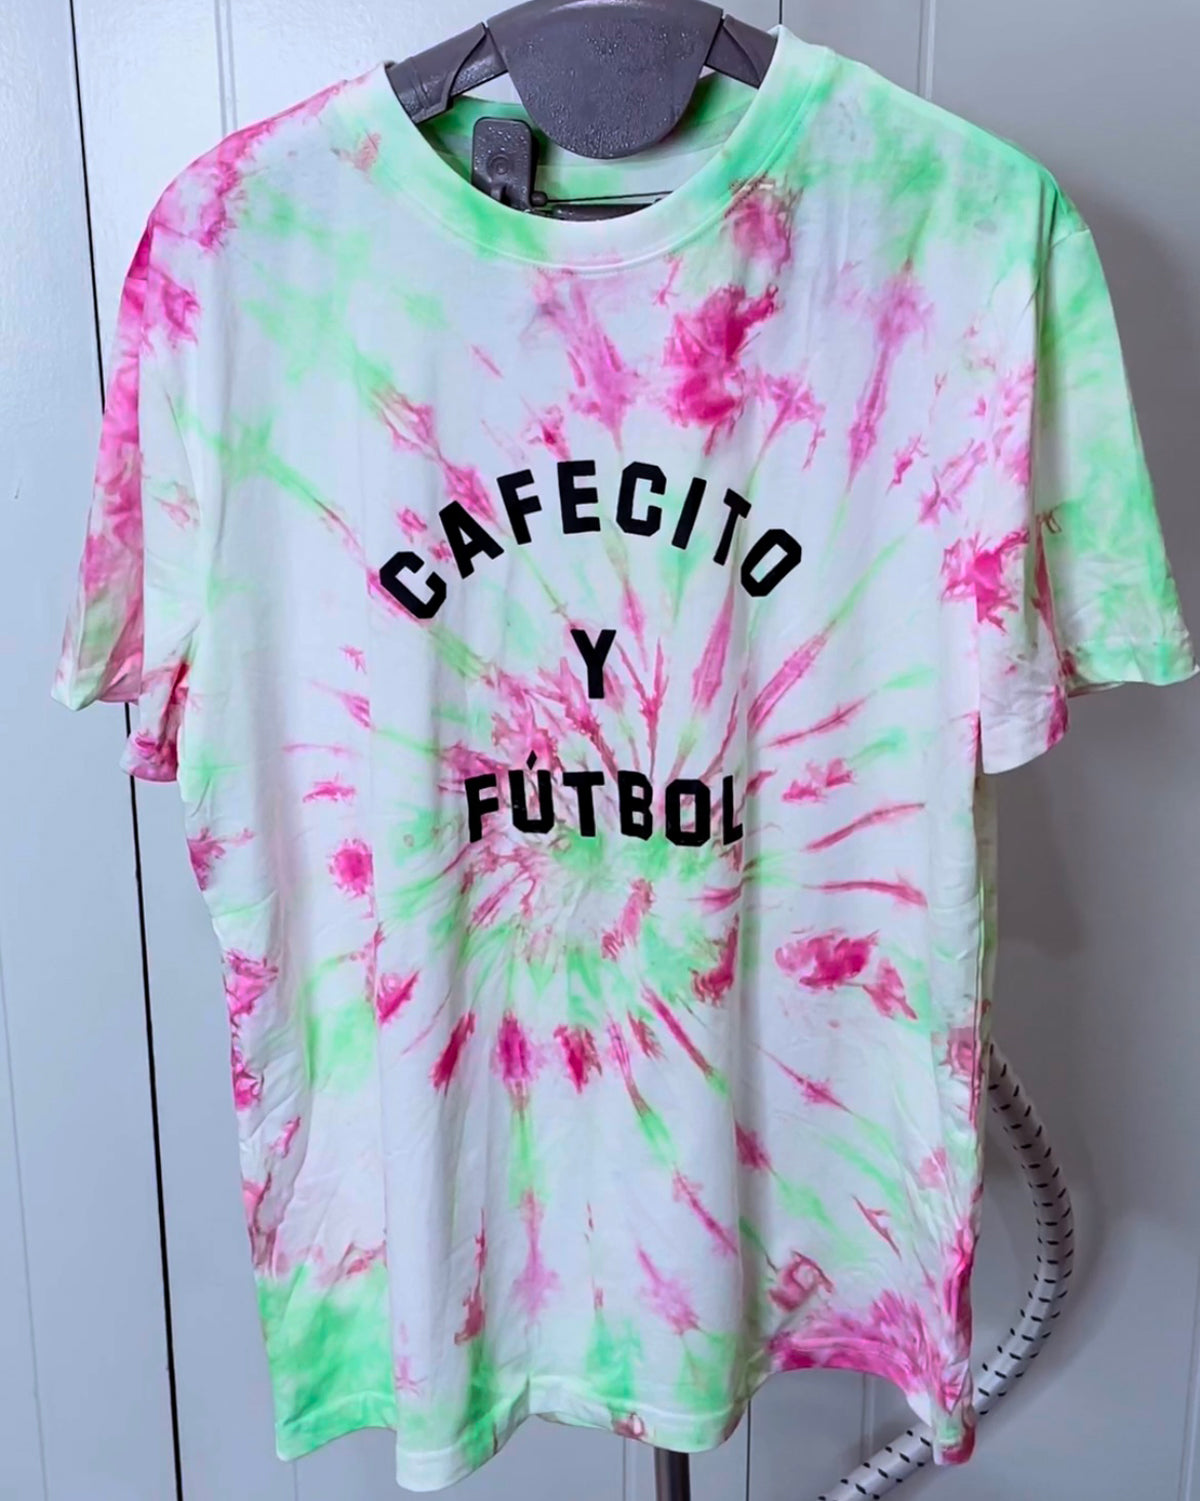 Cafecito Y Fútbol™ T - Tie Dye